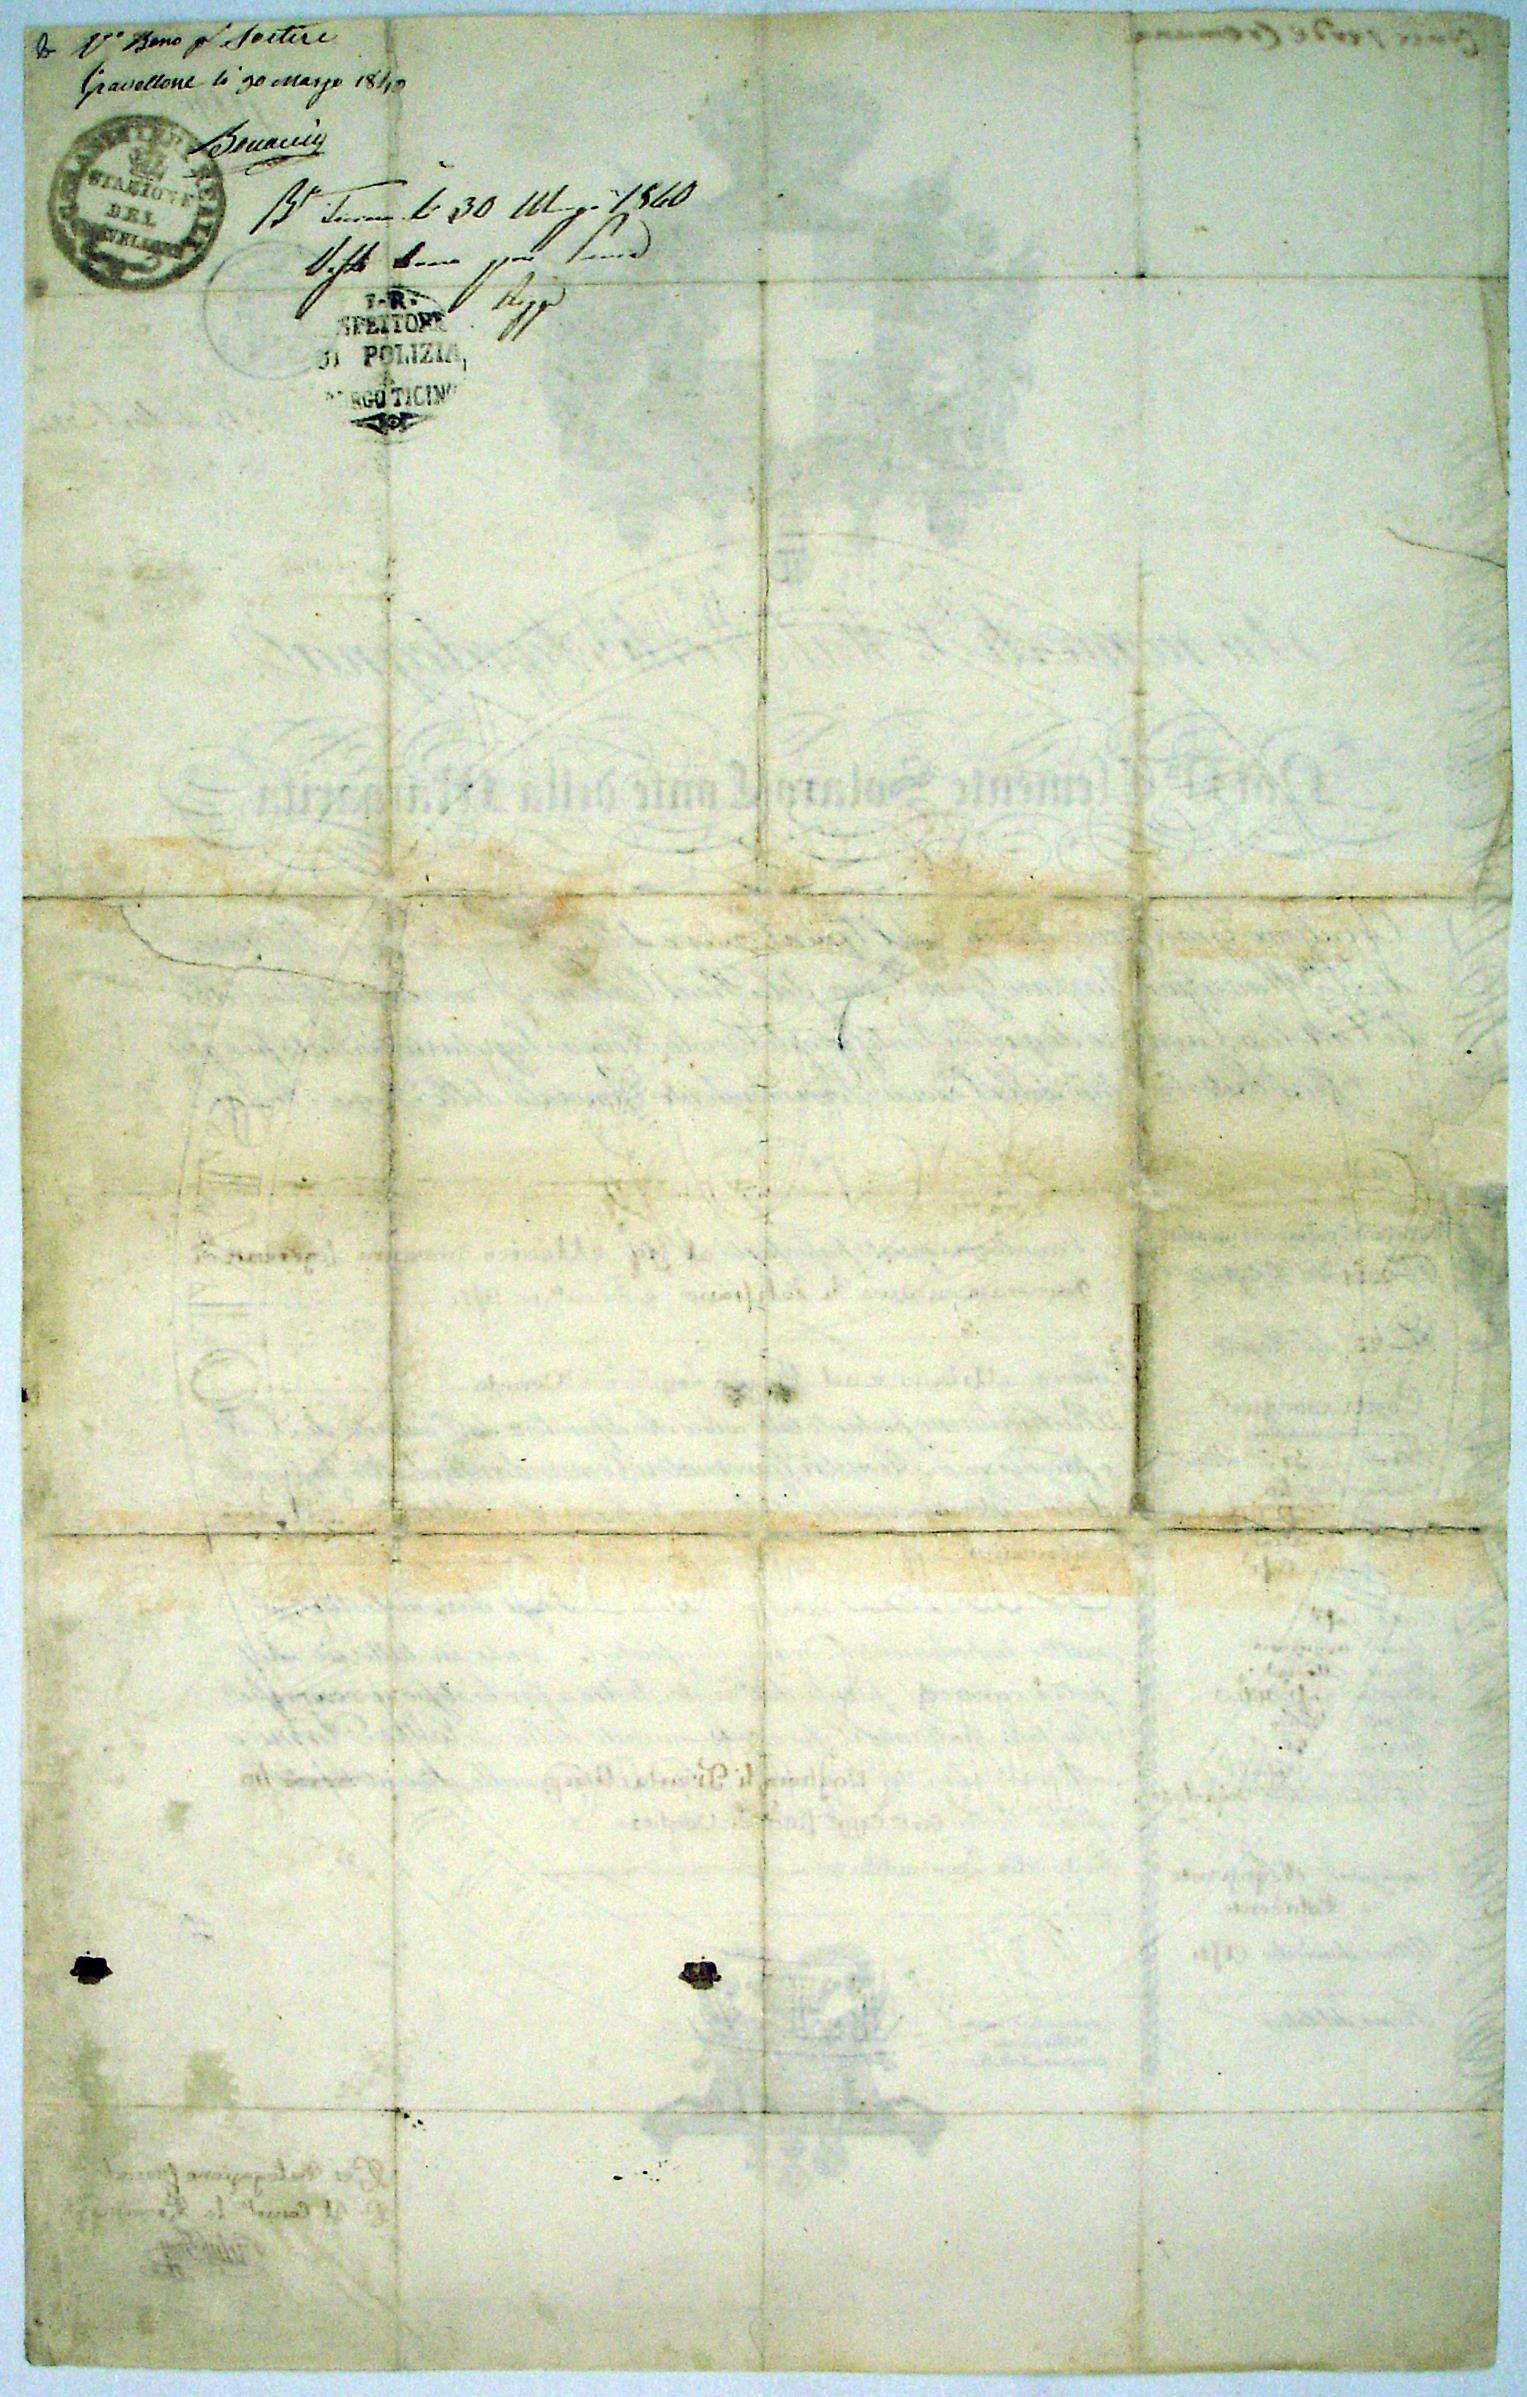 Passaporte de Medico Giovanni Segerente di Domenico